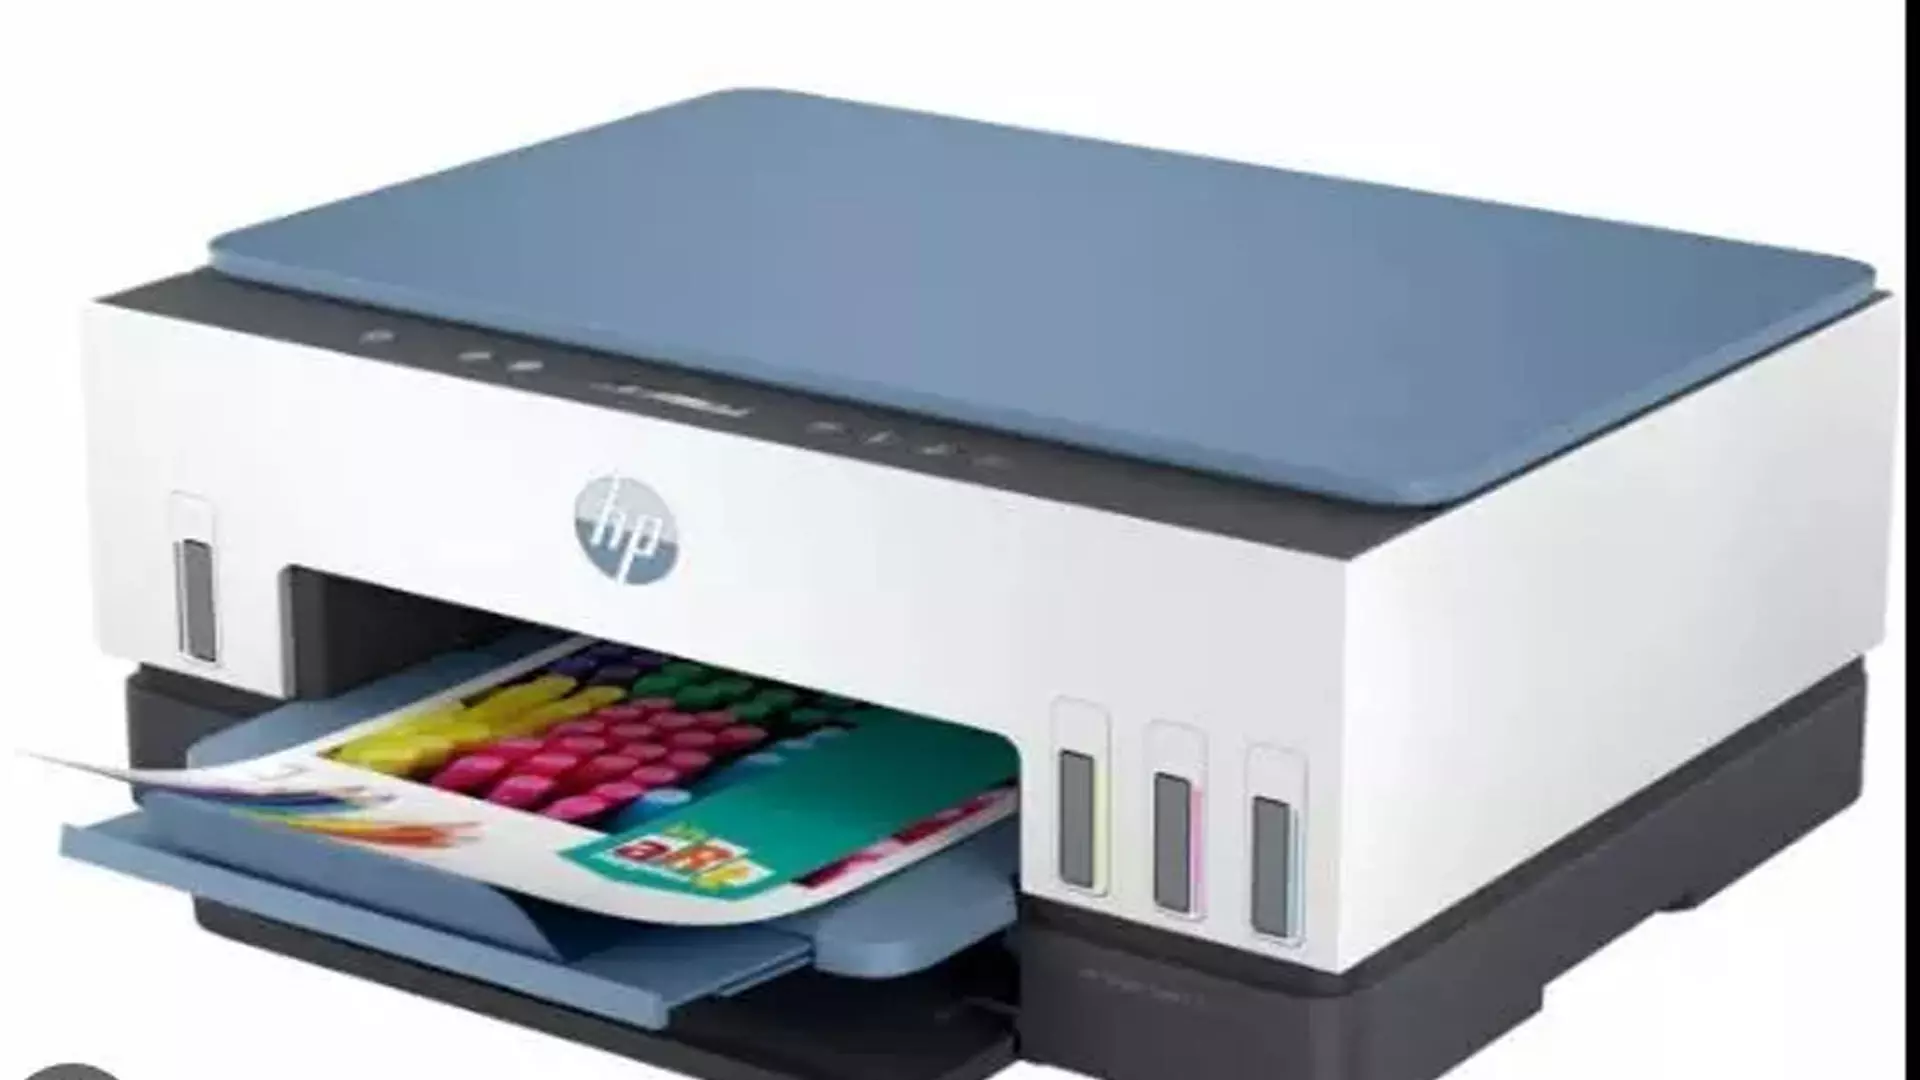 HP ने स्मार्ट टैंक प्रिंटर के लिए बिक्री के बाद की सेवाओं को अपग्रेड किया